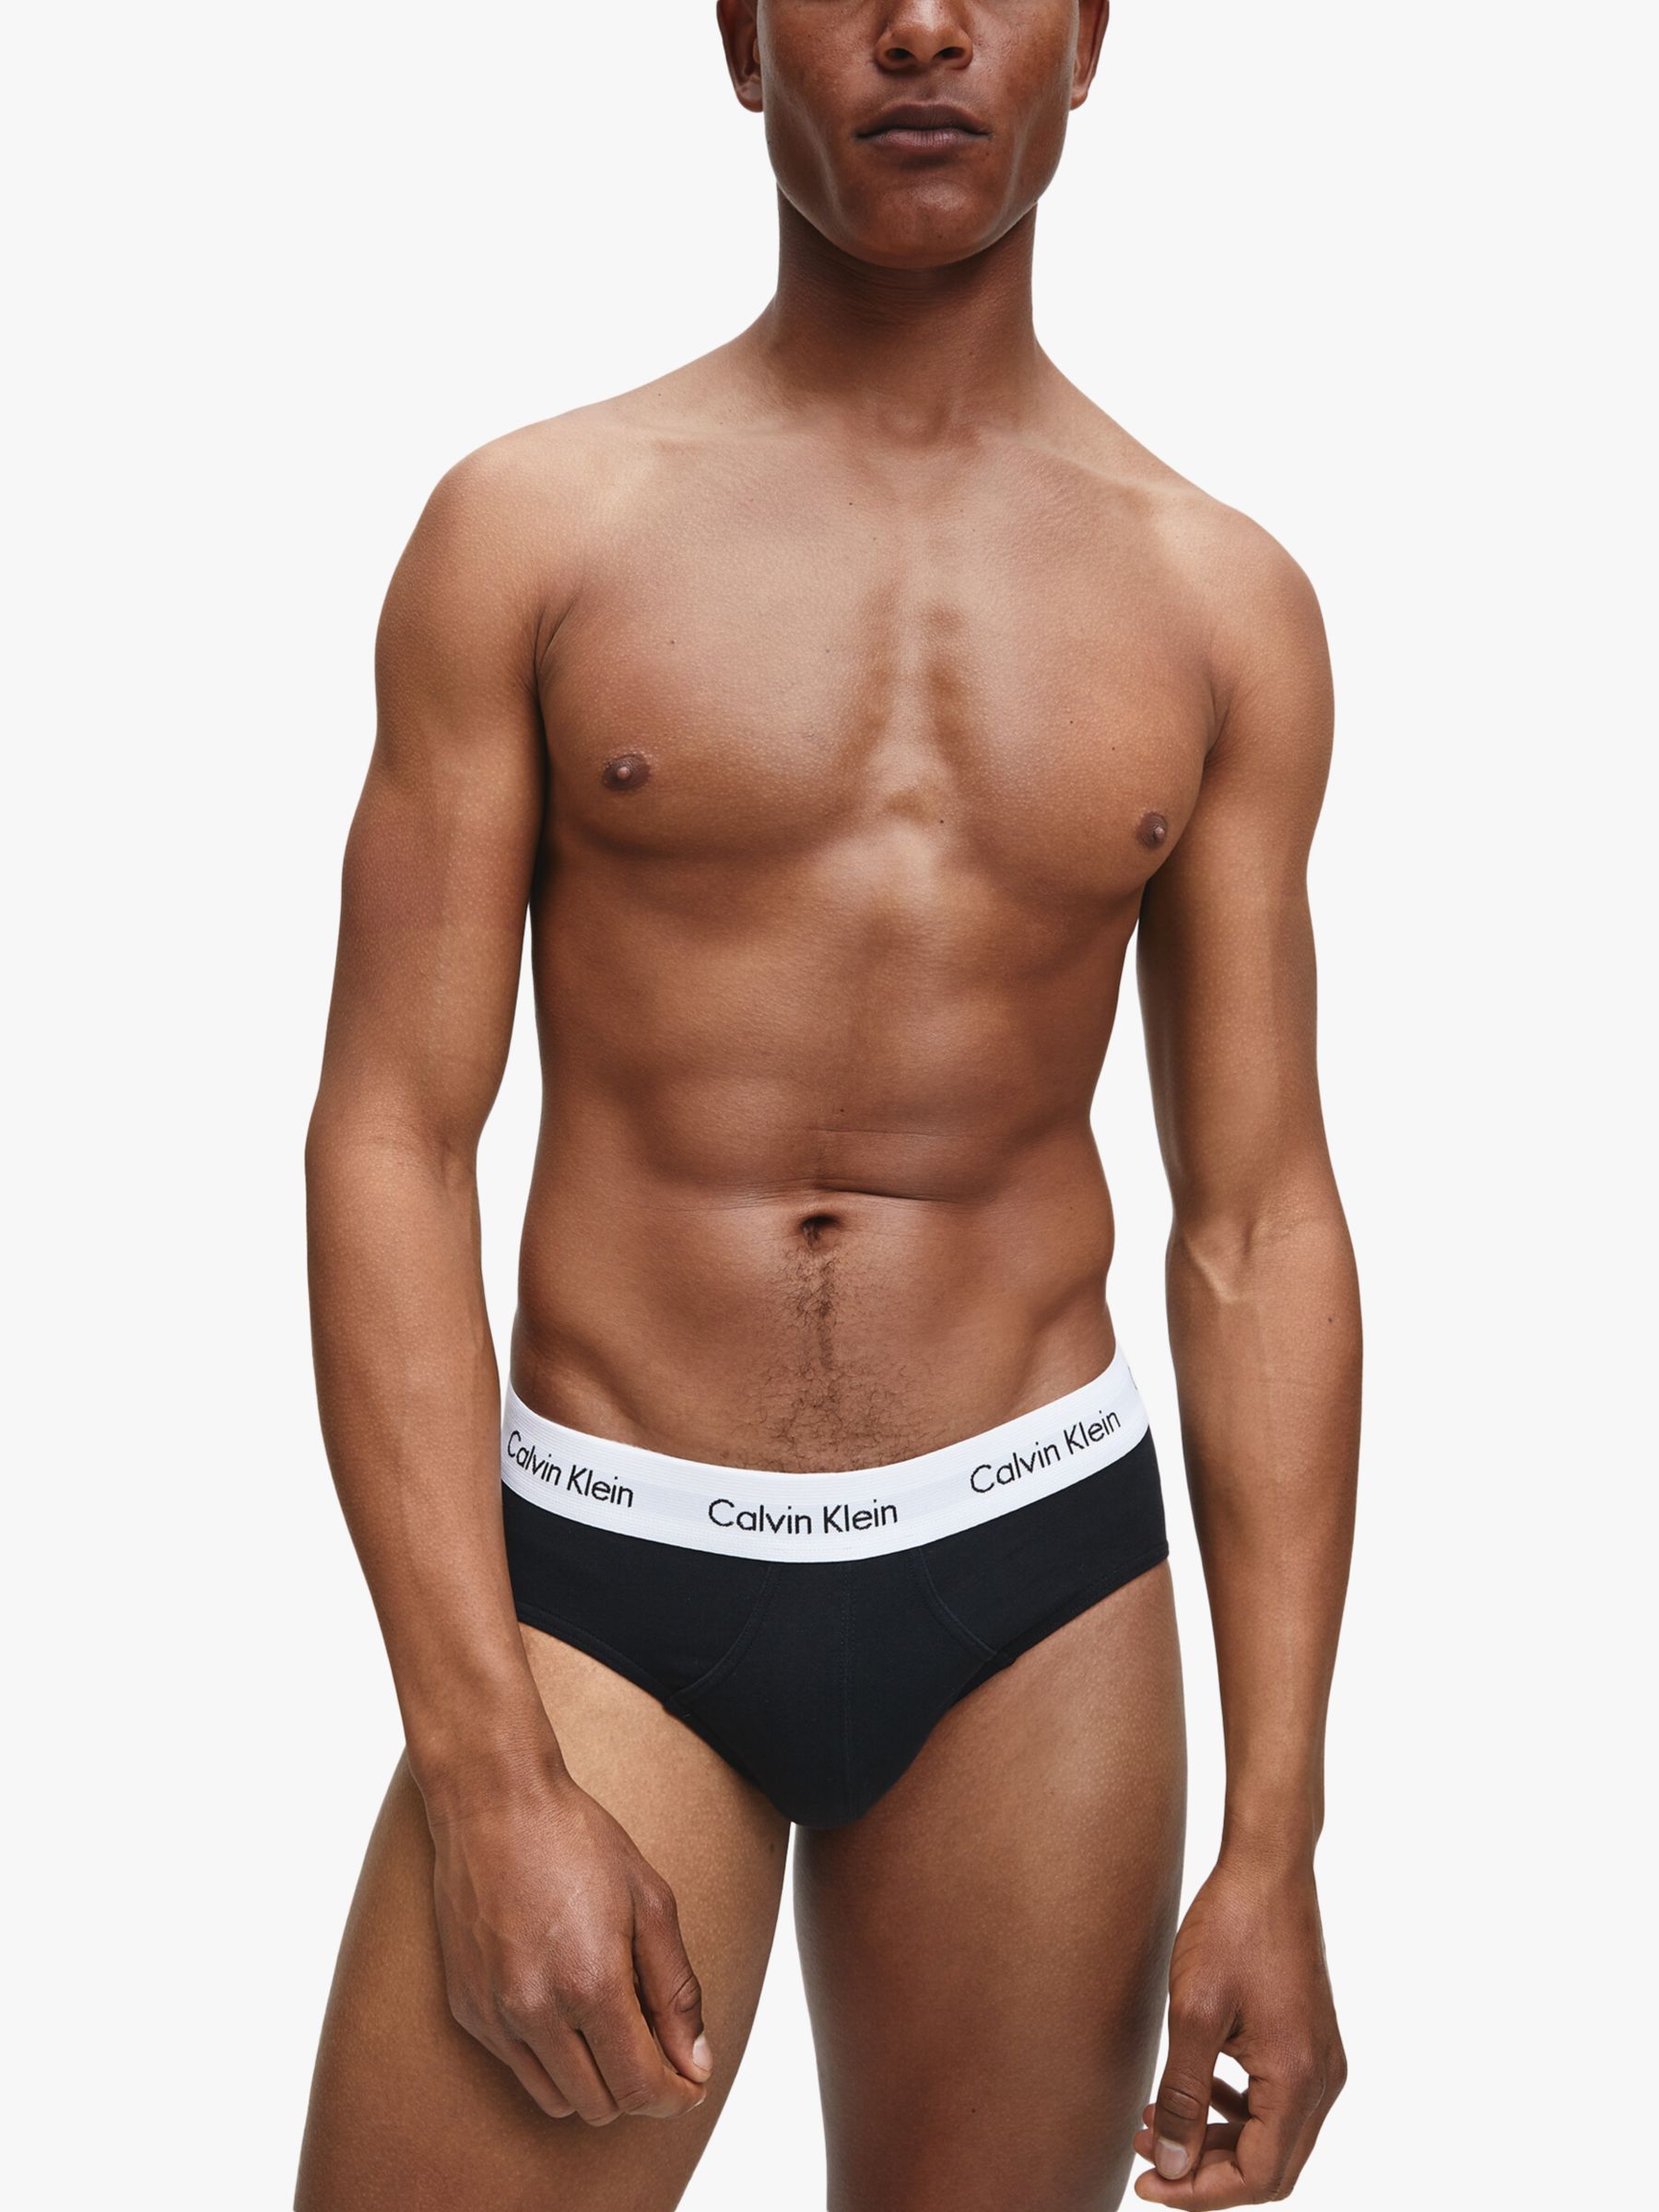 Calvin Klein Underwear Cotton Briefs, Pack of 3, Black at John Lewis &  Partners